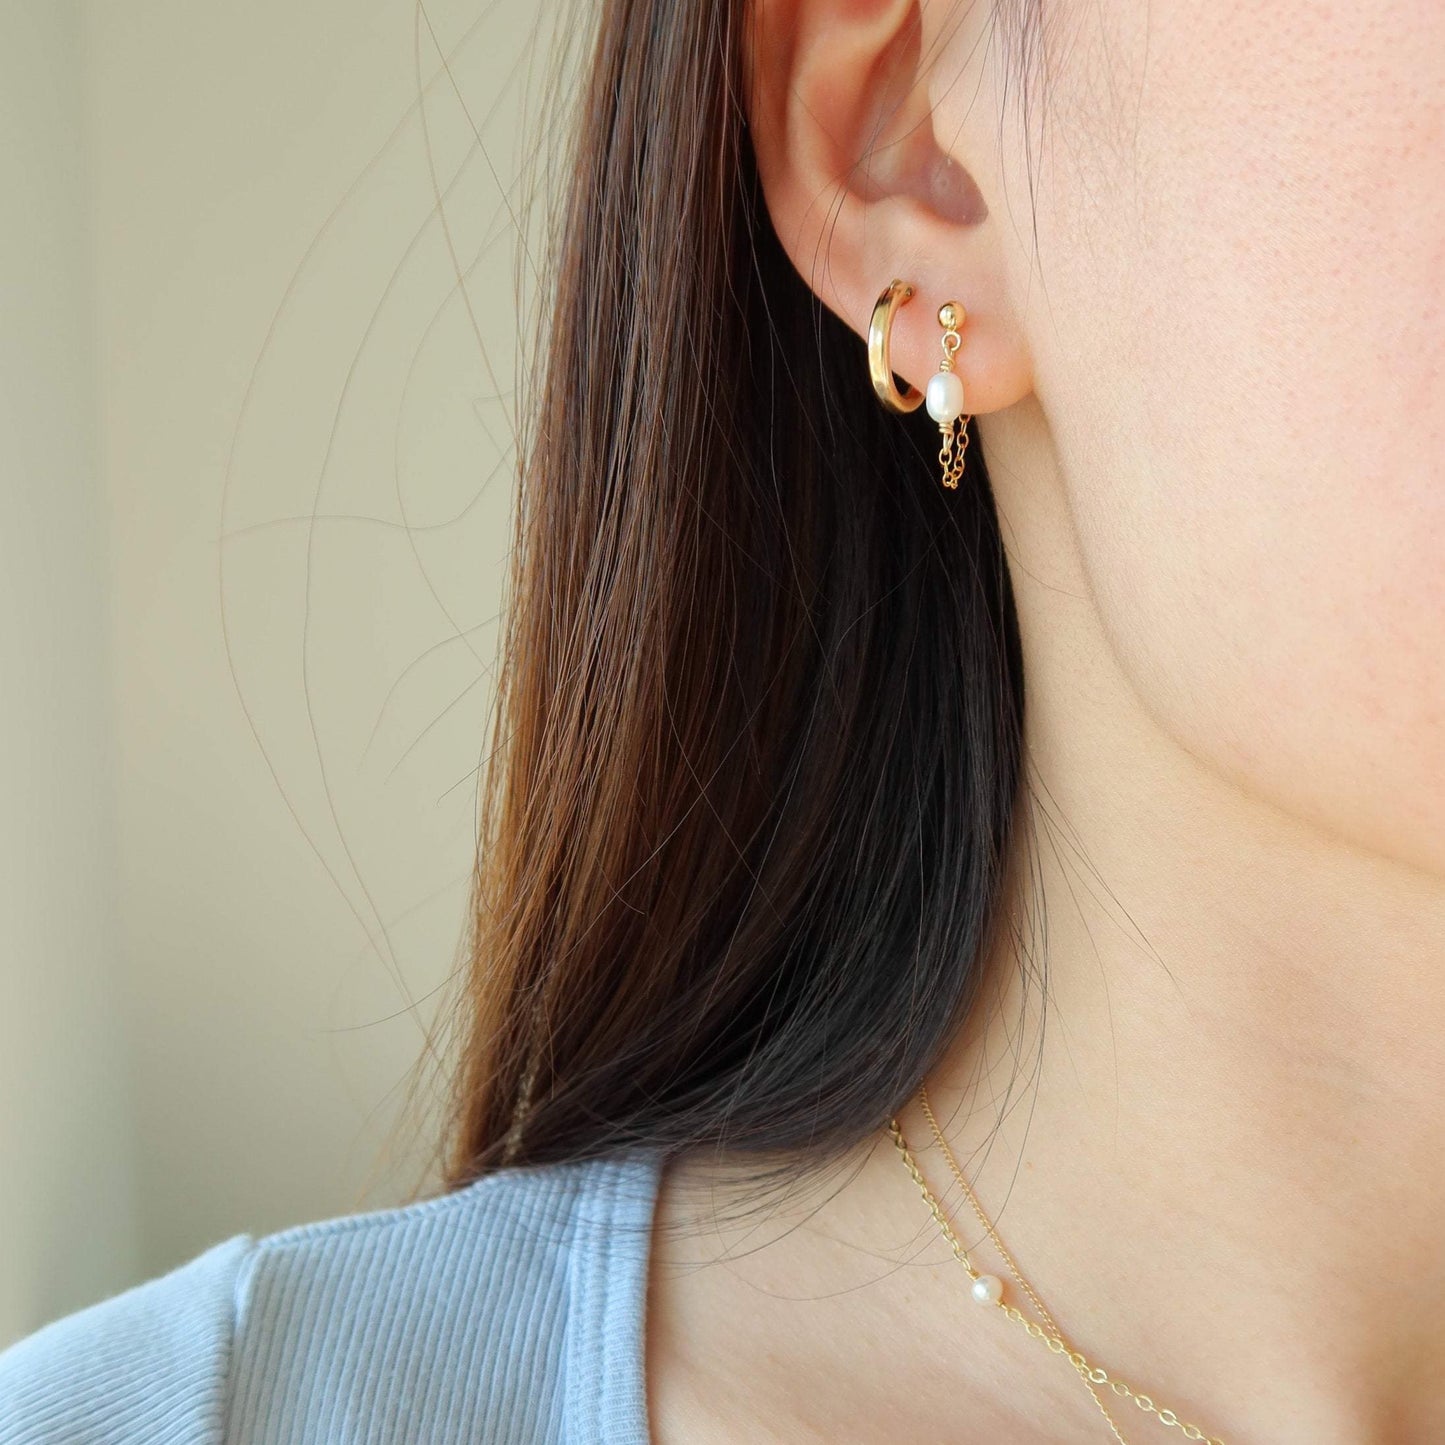 Stella Pearl Chain Earrings